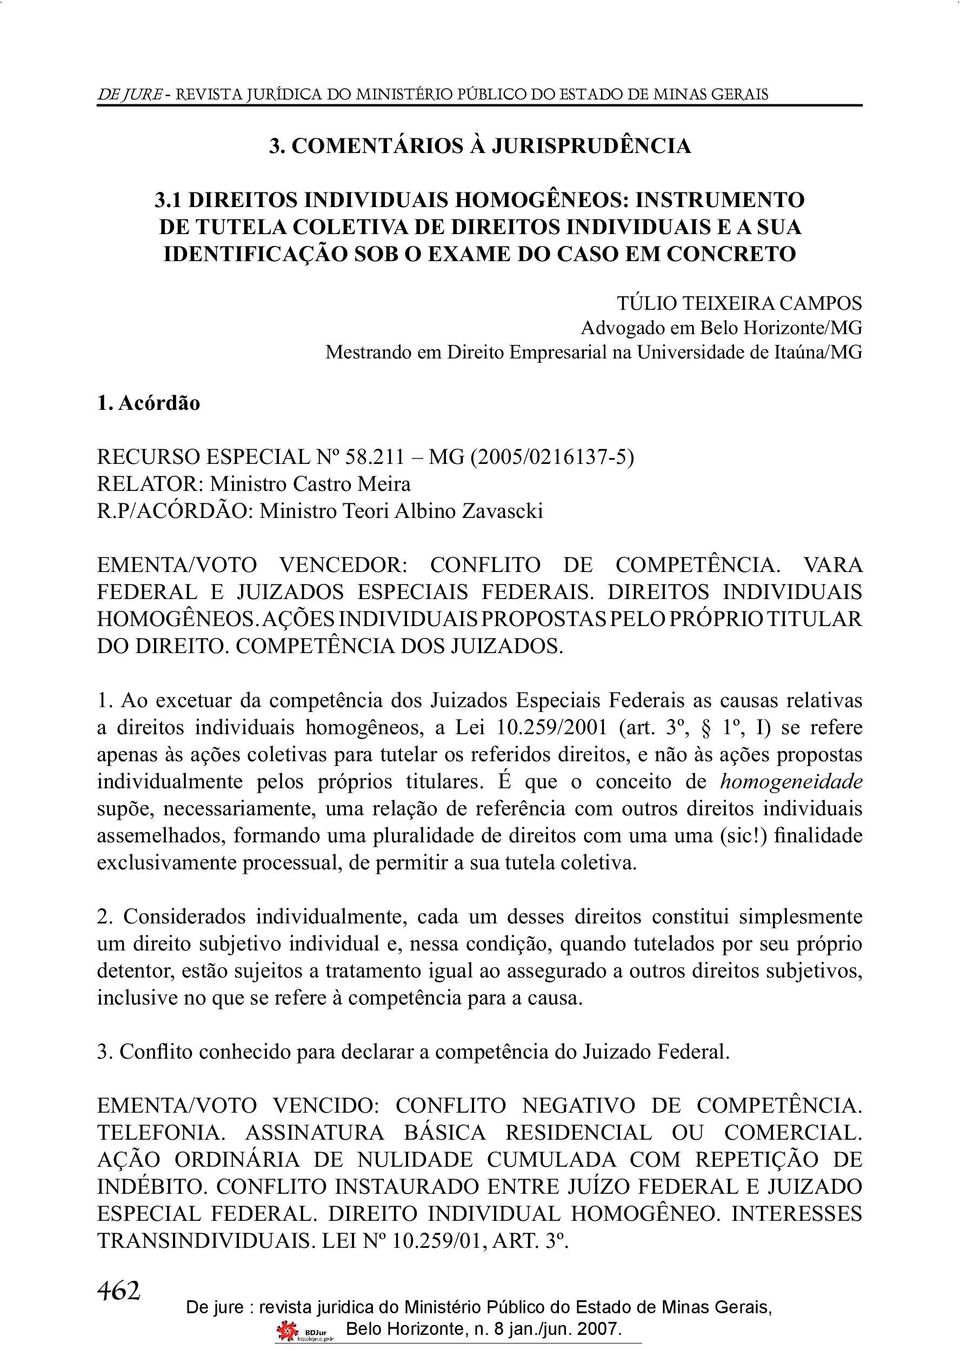 Mestrando em Direito Empresarial na Universidade de Itaúna/MG RECURSO ESPECIAL Nº 58.211 MG (2005/0216137-5) RELATOR: Ministro Castro Meira R.